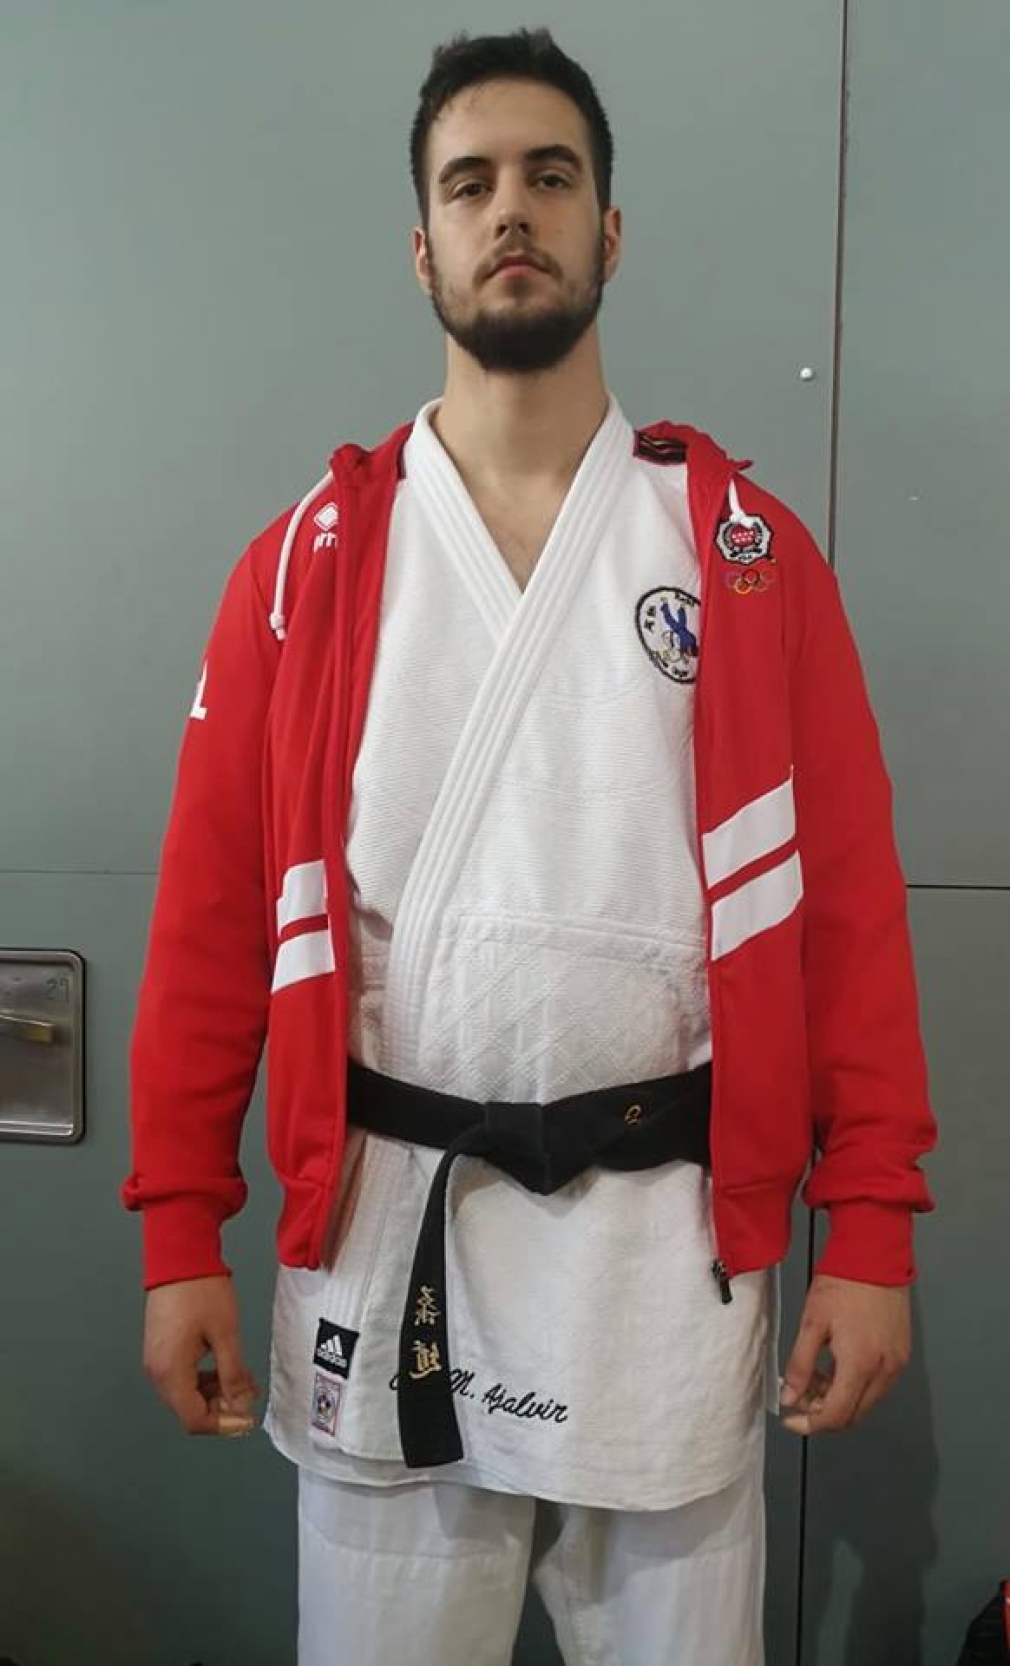 Juan Carlos Espejo séptimo en el Campeonato de España Junior de Judo.